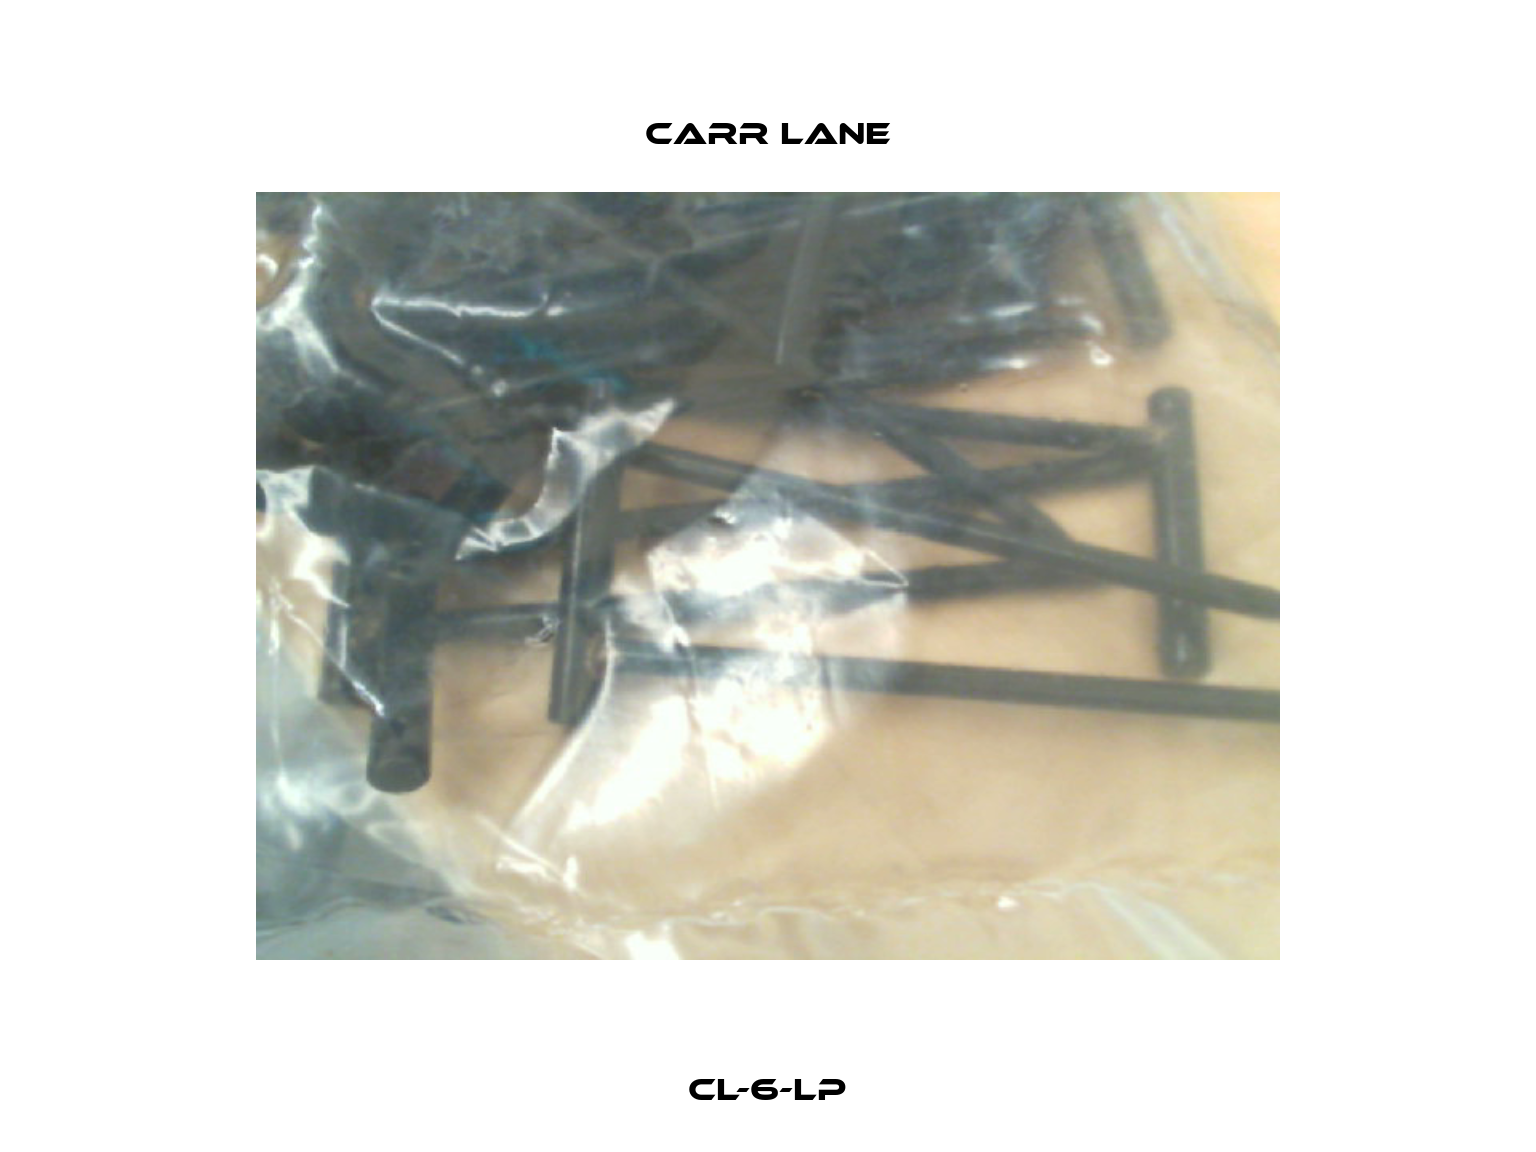 CL-6-LP Carr Lane